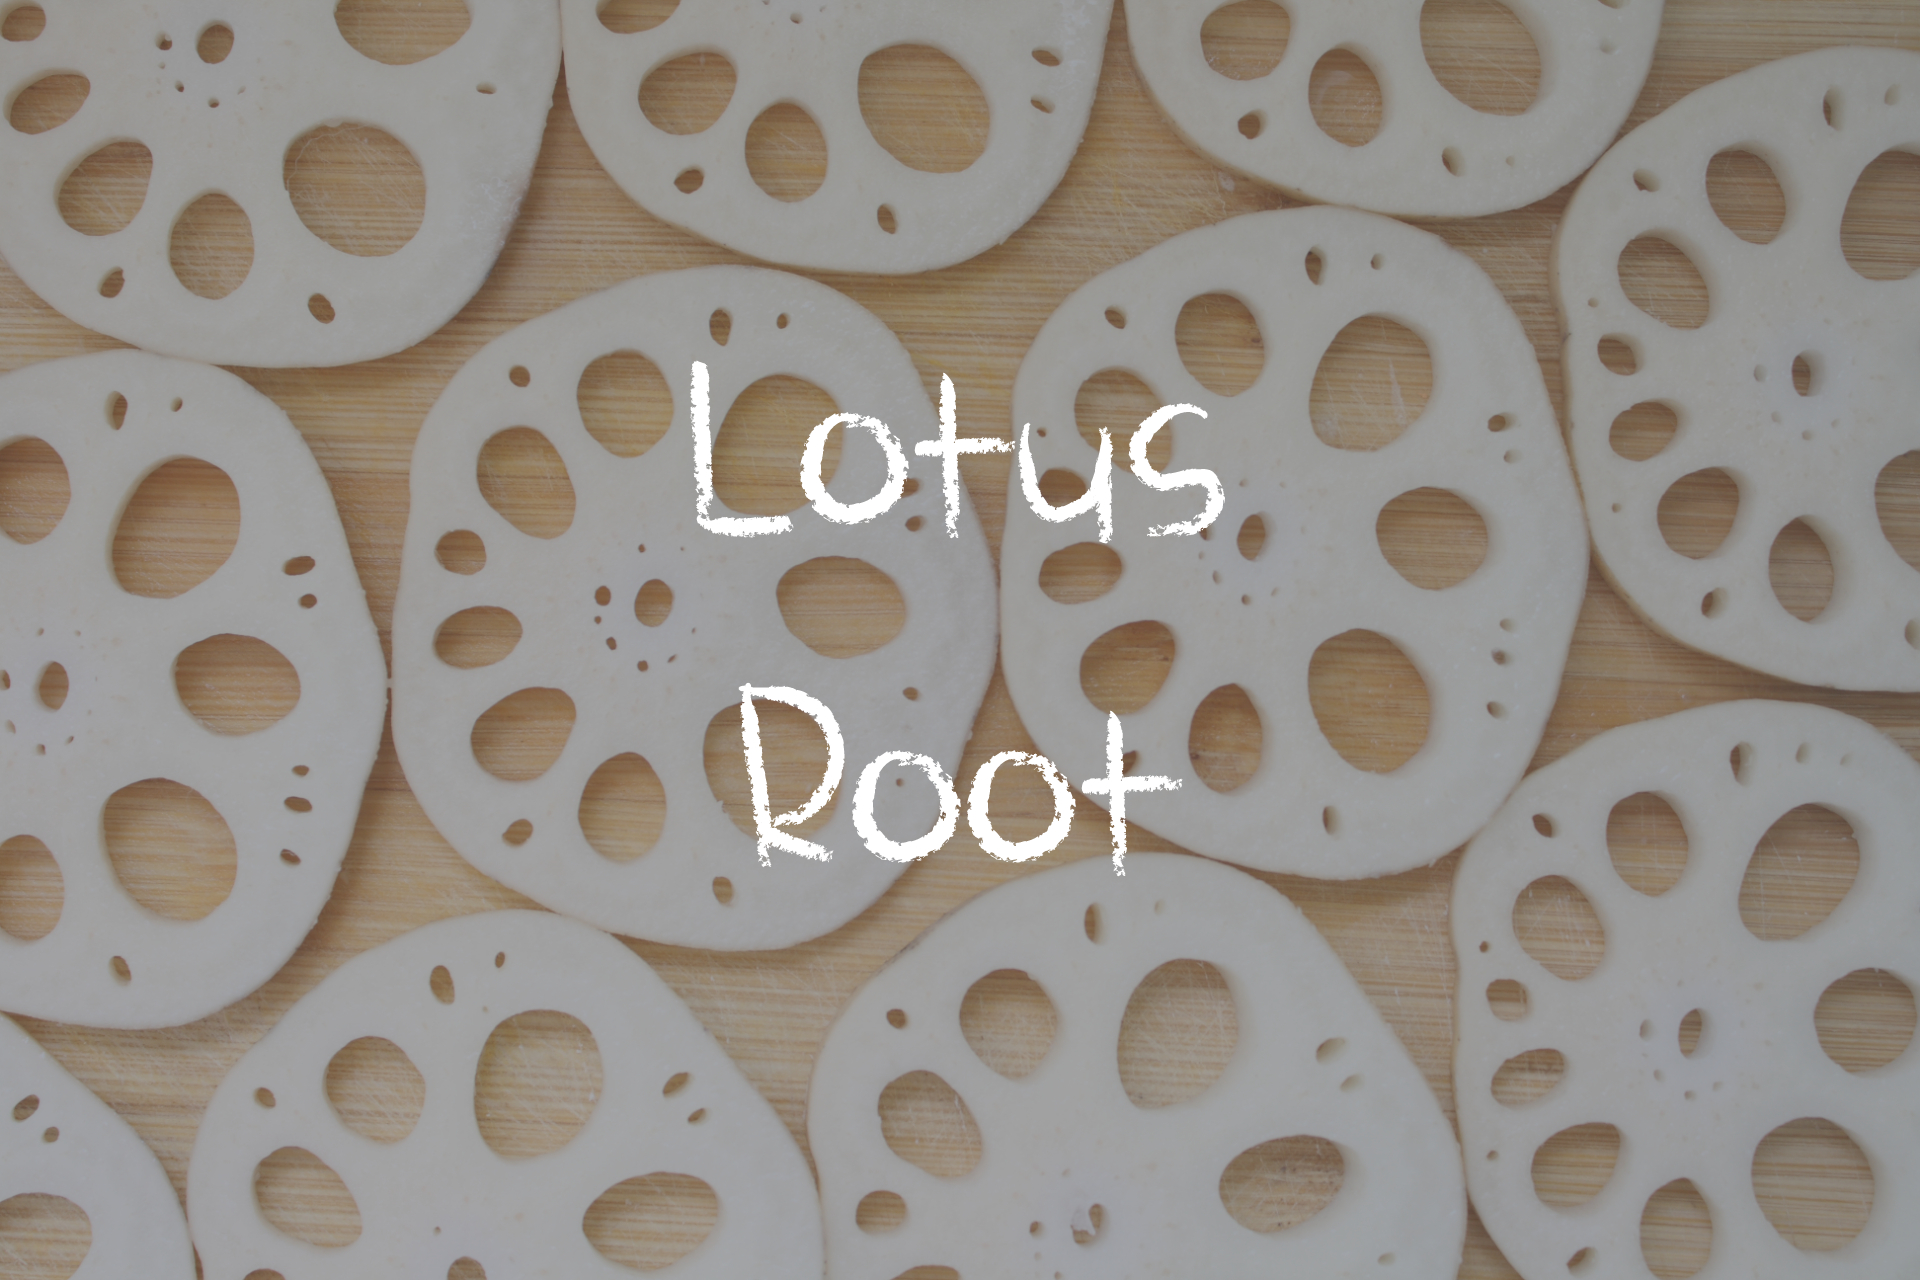 What does lotus root taste like?